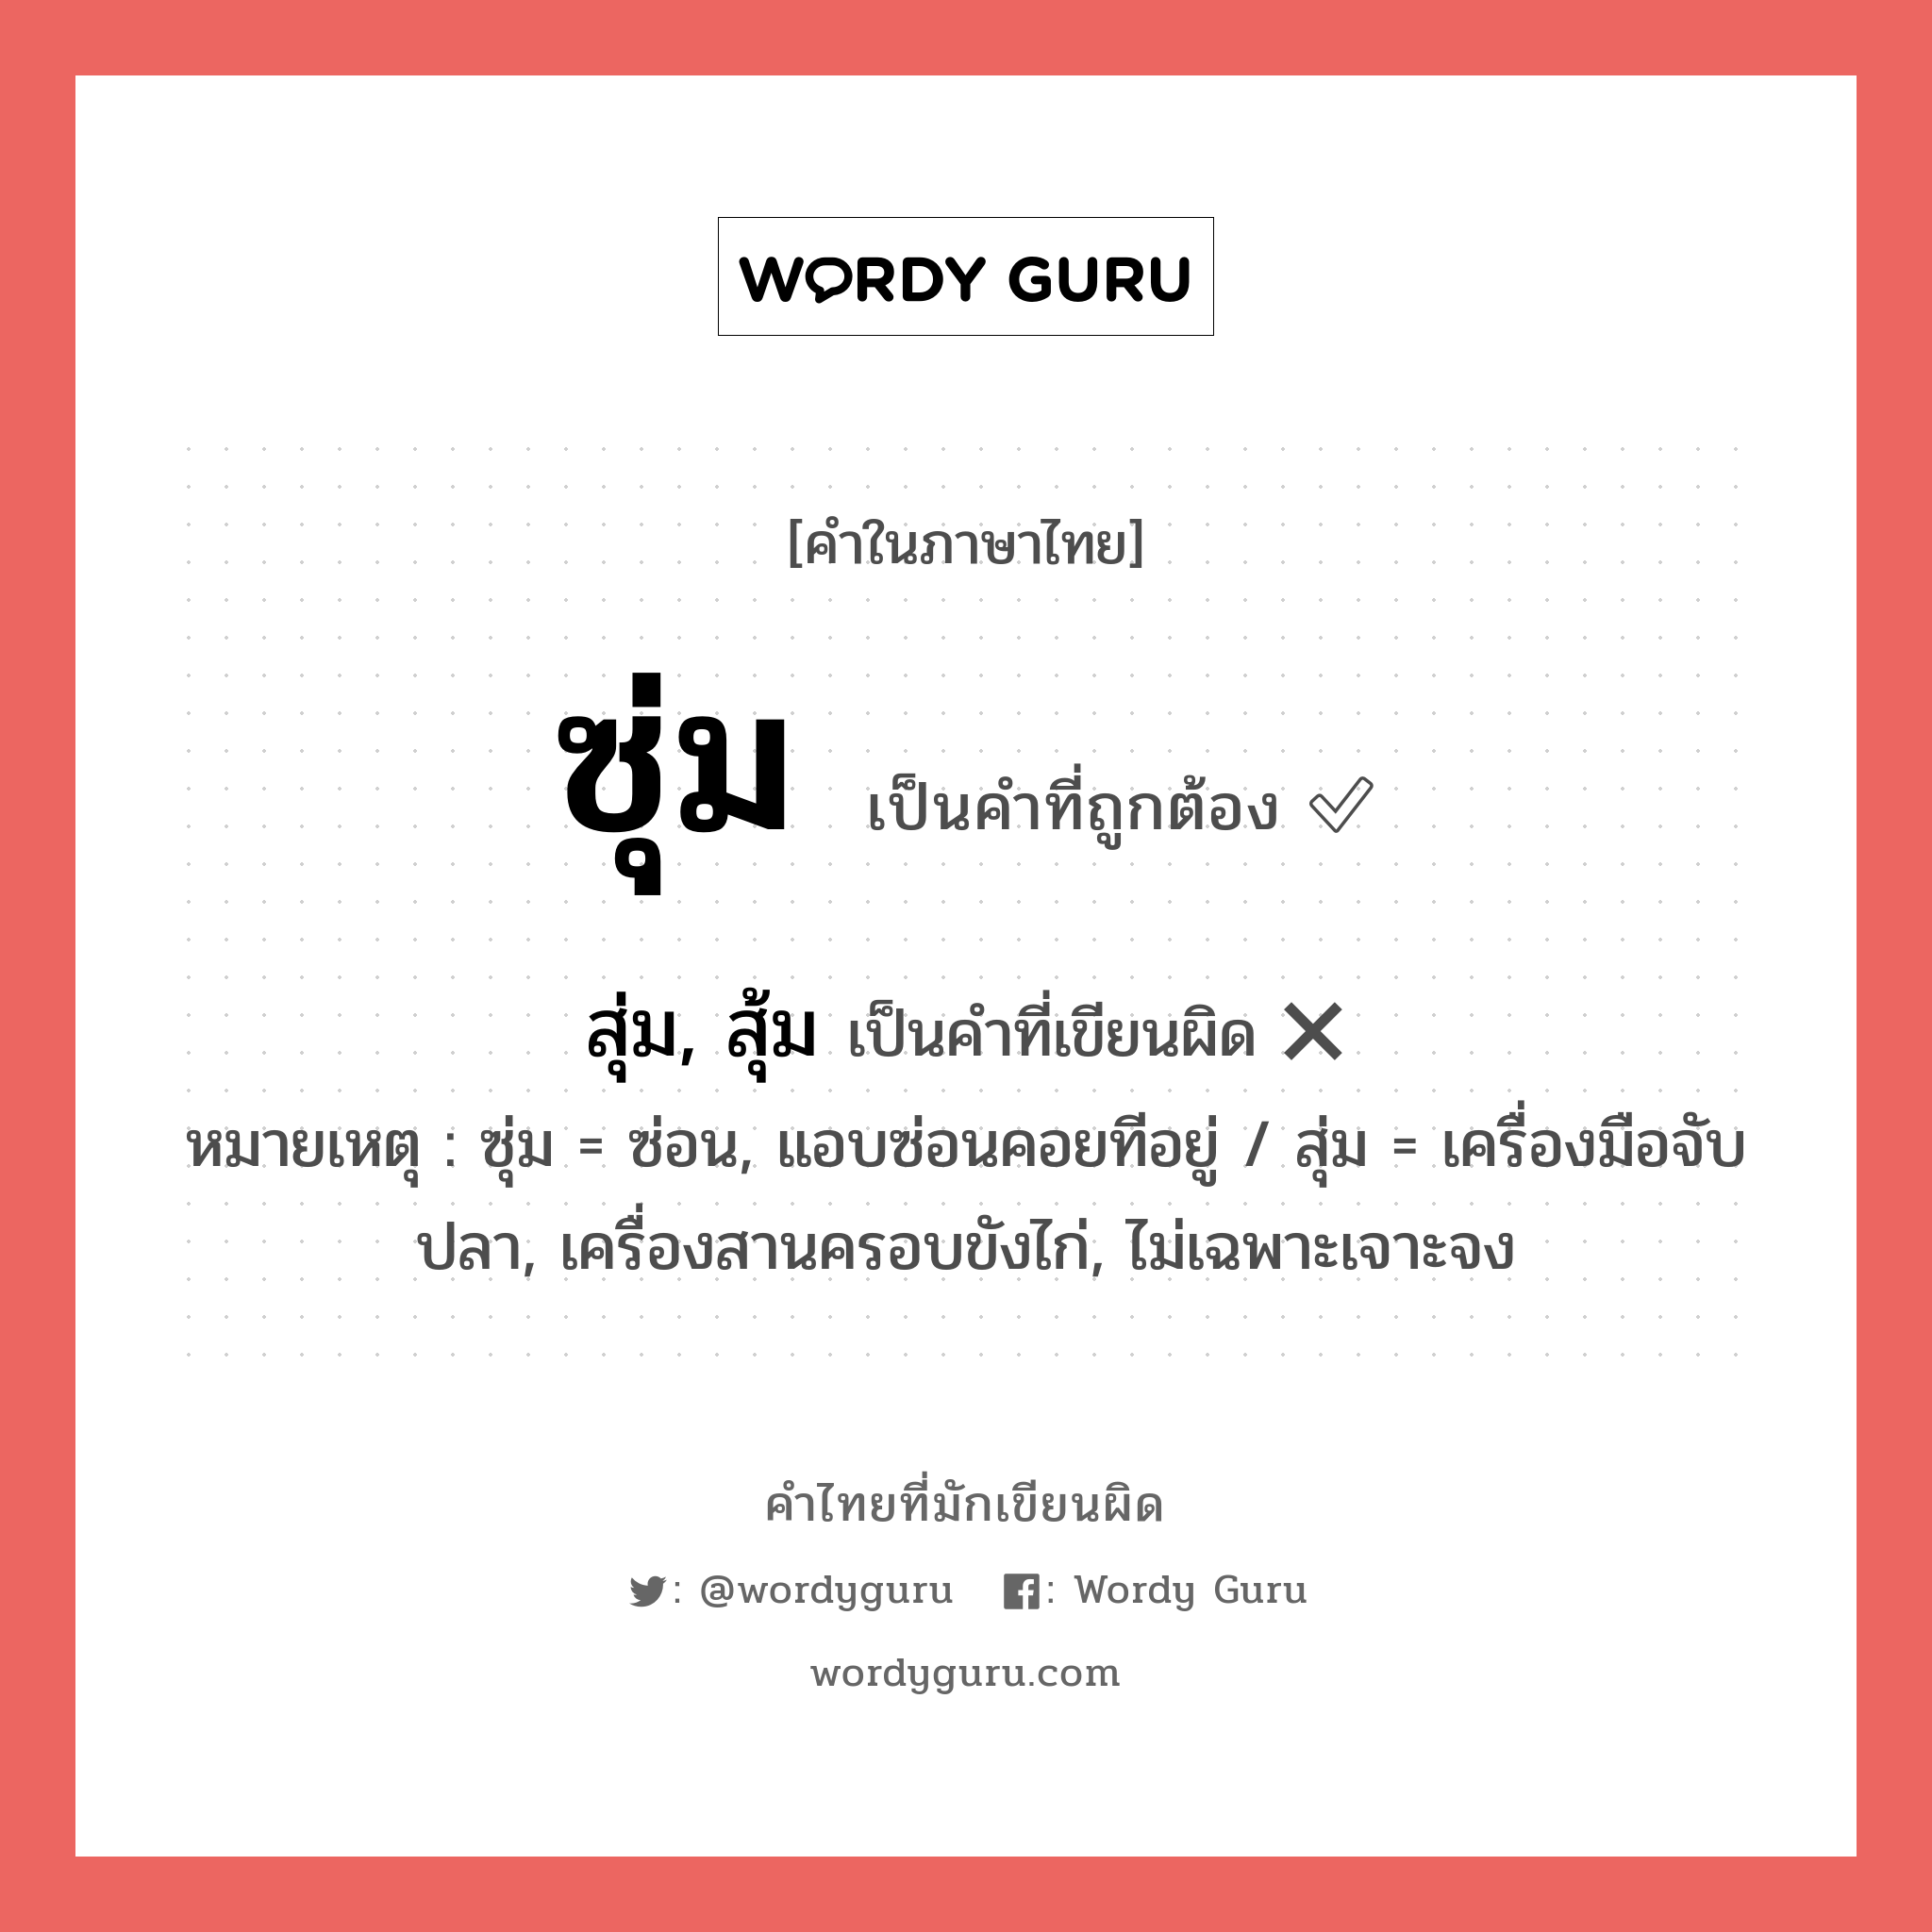 ซุ่ม หรือ สุ่ม, สุ้ม คำไหนเขียนถูก?, คำในภาษาไทยที่มักเขียนผิด ซุ่ม คำที่ผิด ❌ สุ่ม, สุ้ม หมายเหตุ ซุ่ม = ซ่อน, แอบซ่อนคอยทีอยู่ / สุ่ม = เครื่องมือจับปลา, เครื่องสานครอบขังไก่, ไม่เฉพาะเจาะจง